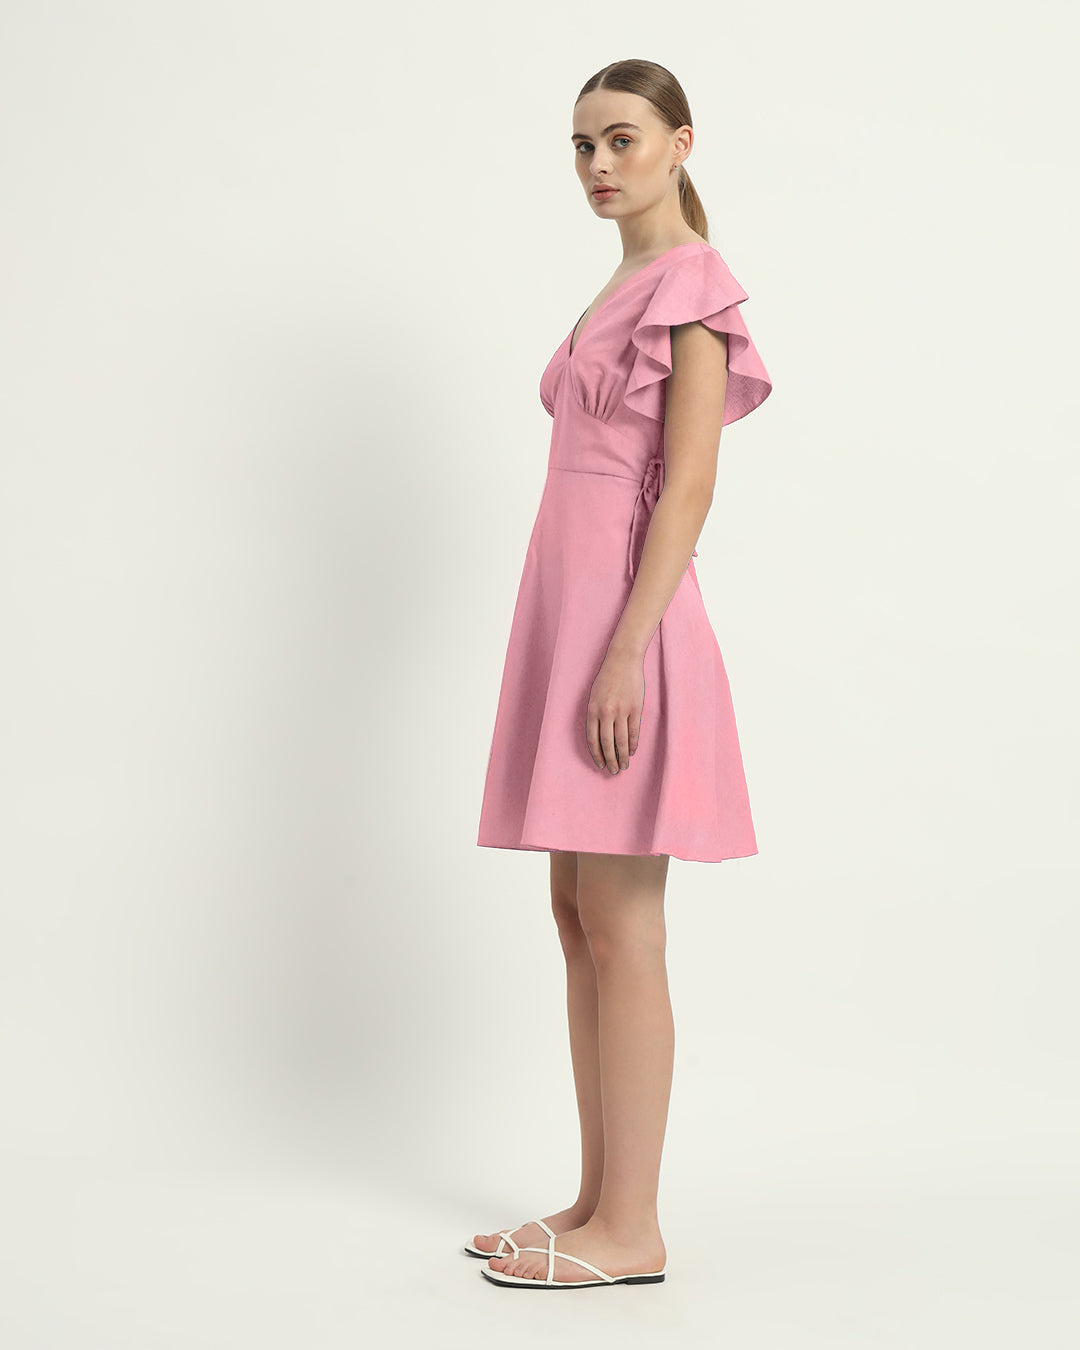 The Fairlie Fondant Pink Cotton Dress